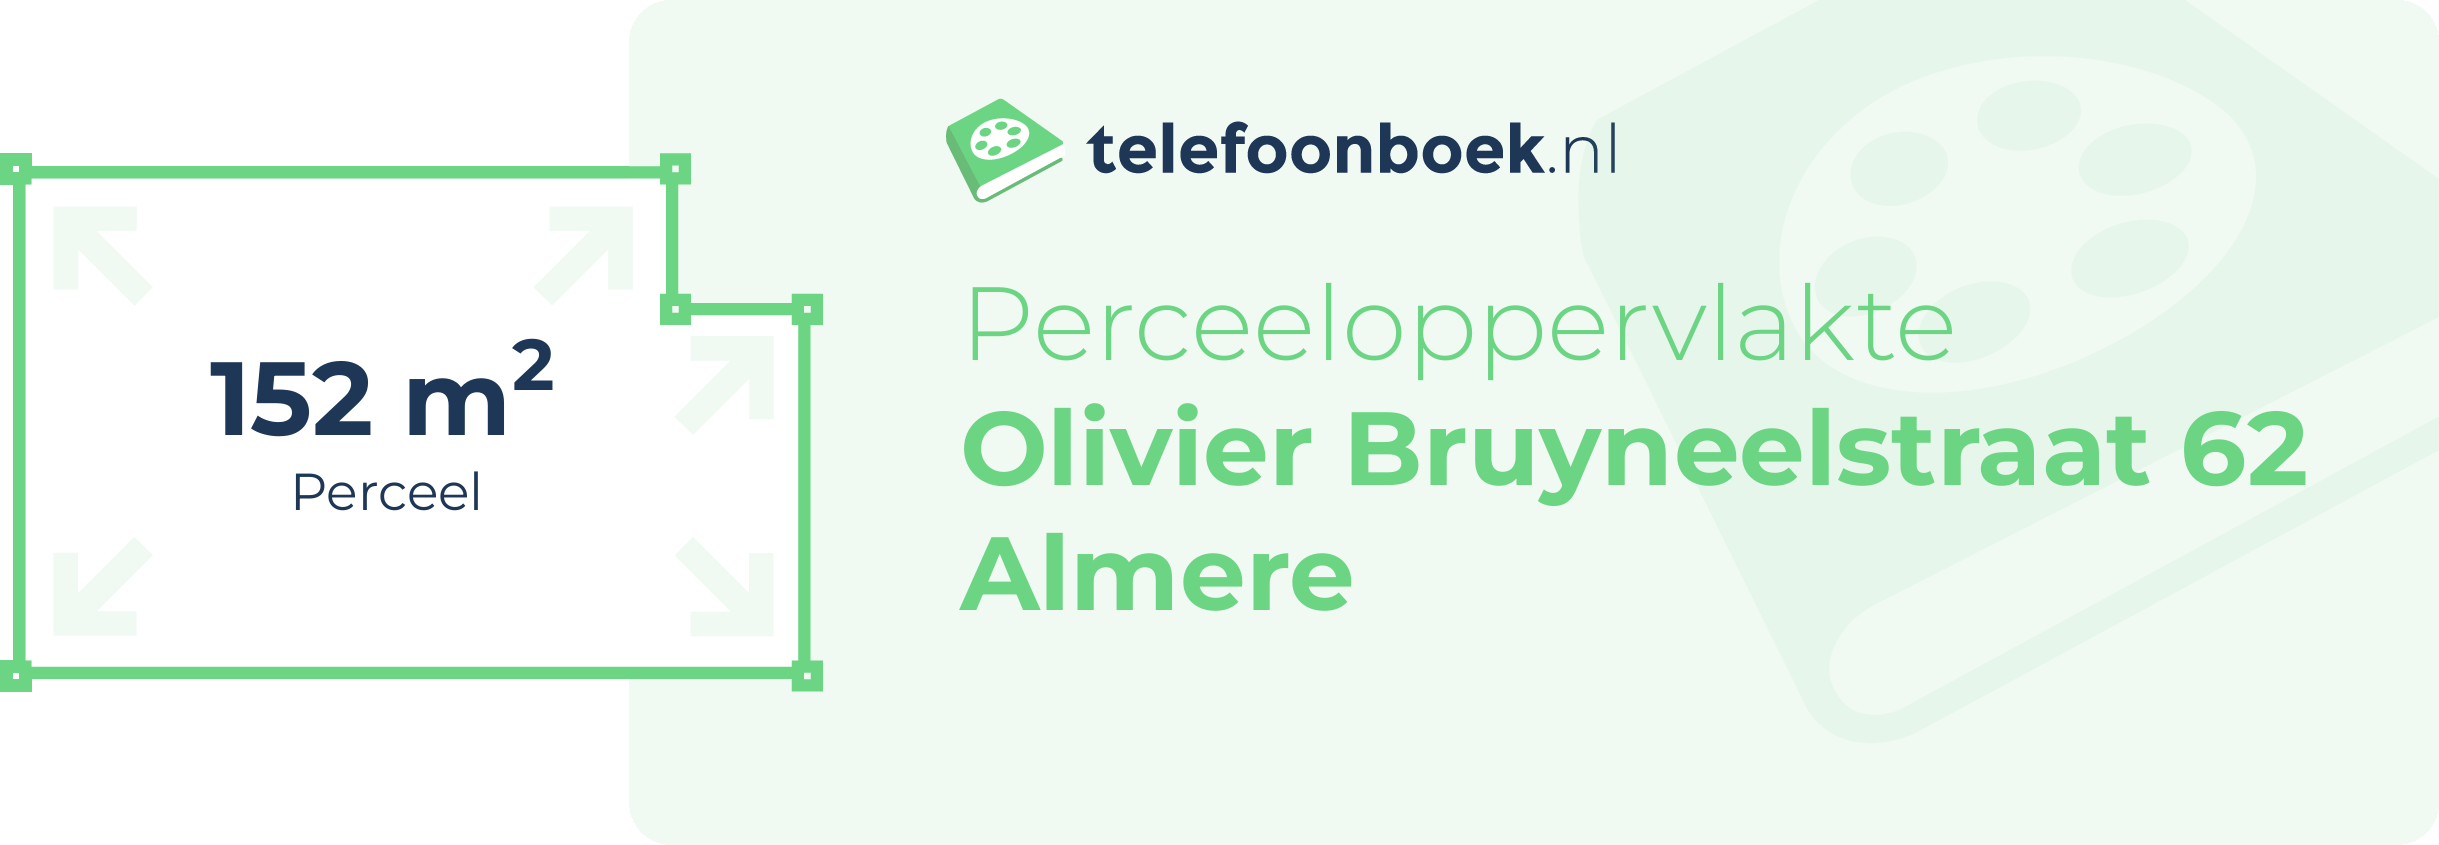 Perceeloppervlakte Olivier Bruyneelstraat 62 Almere